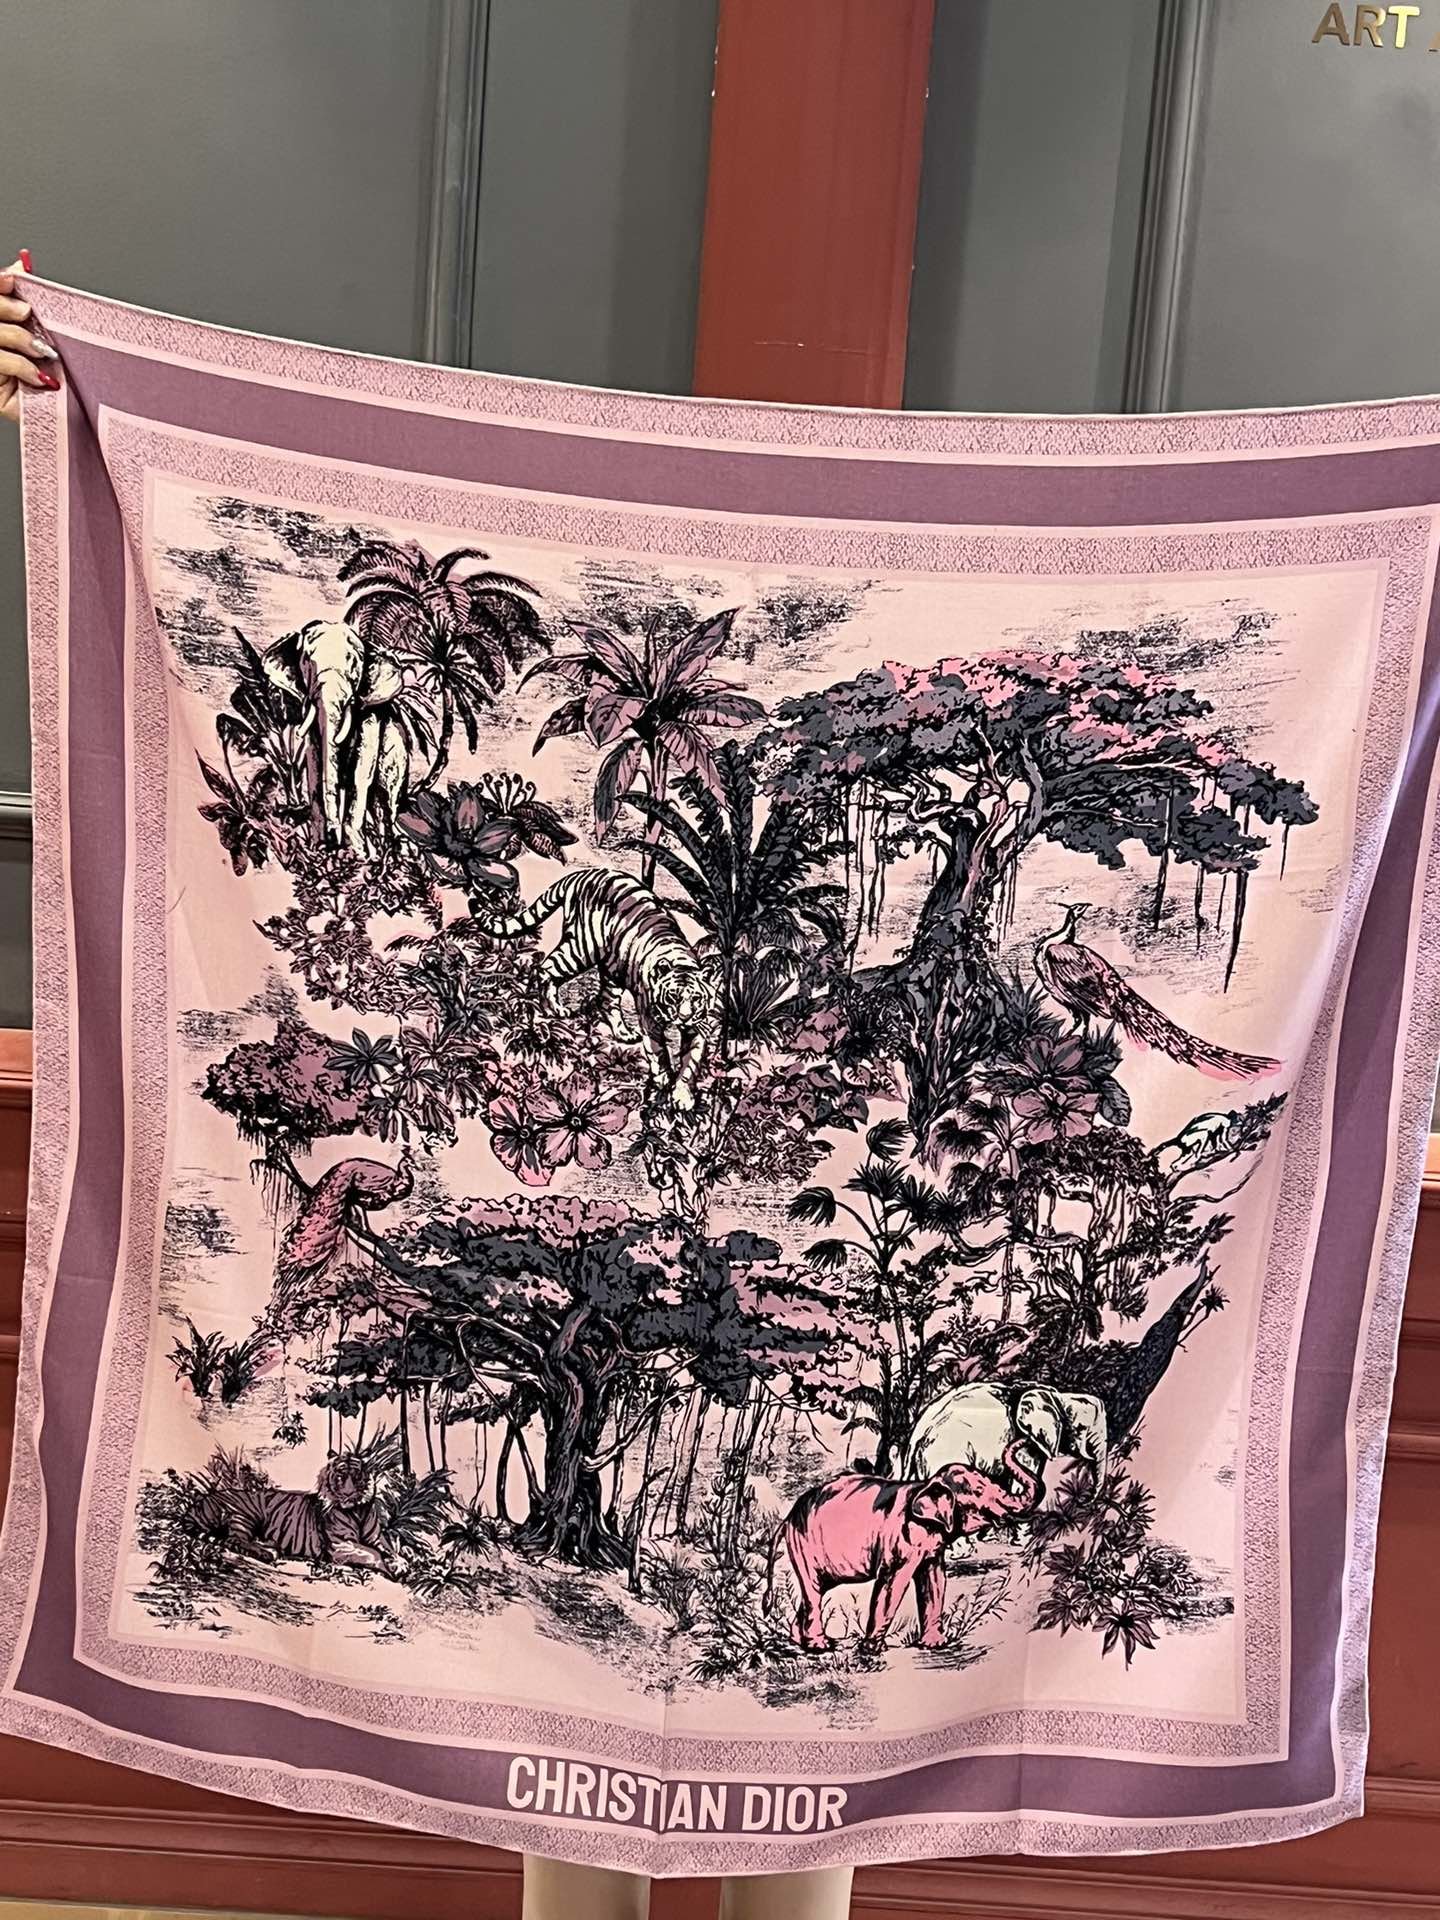 这款方巾饰以Voyage茹伊印花图案来自Dior与意大利艺术家彼得罗鲁福ietroRuffo携手打造的系